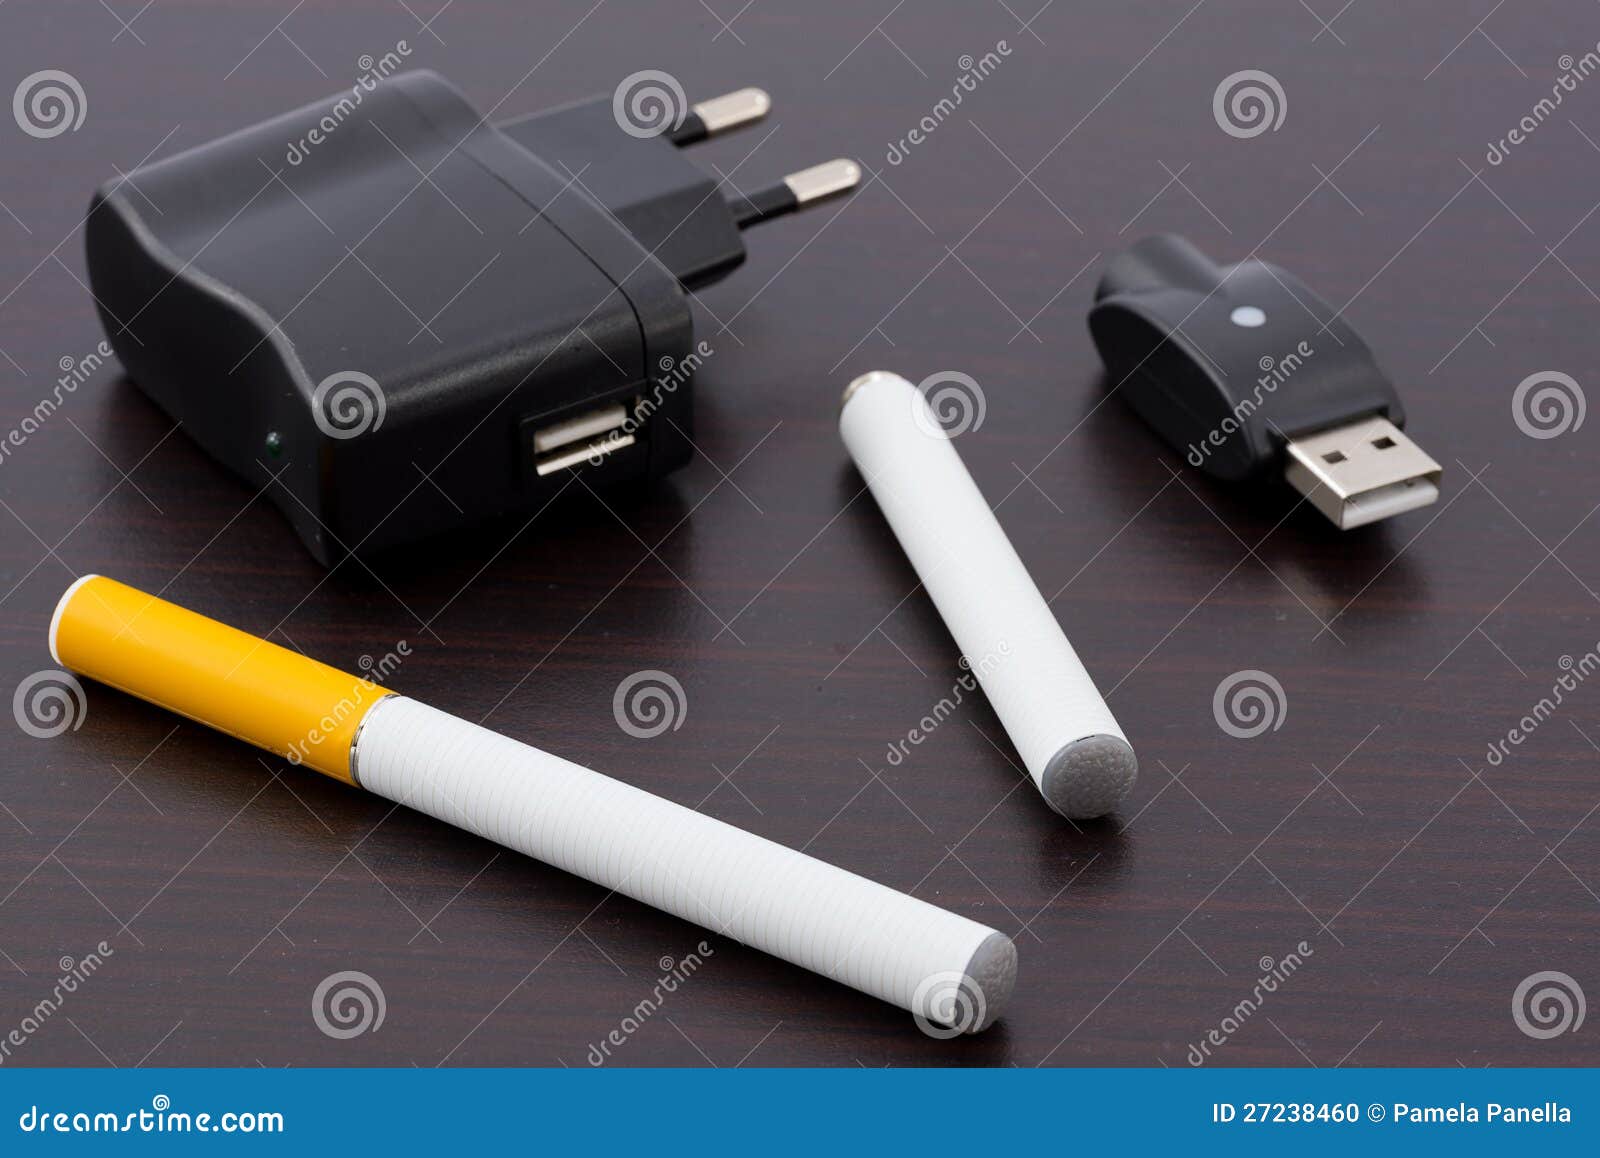 Сигареты с зарядкой купить. Электронная сигарета 4200 затяжек зарядкой. Смокер электро сигарета зарядник. Зарядное для электронной сигареты. Одноразовые электронные сигареты с зарядкой.